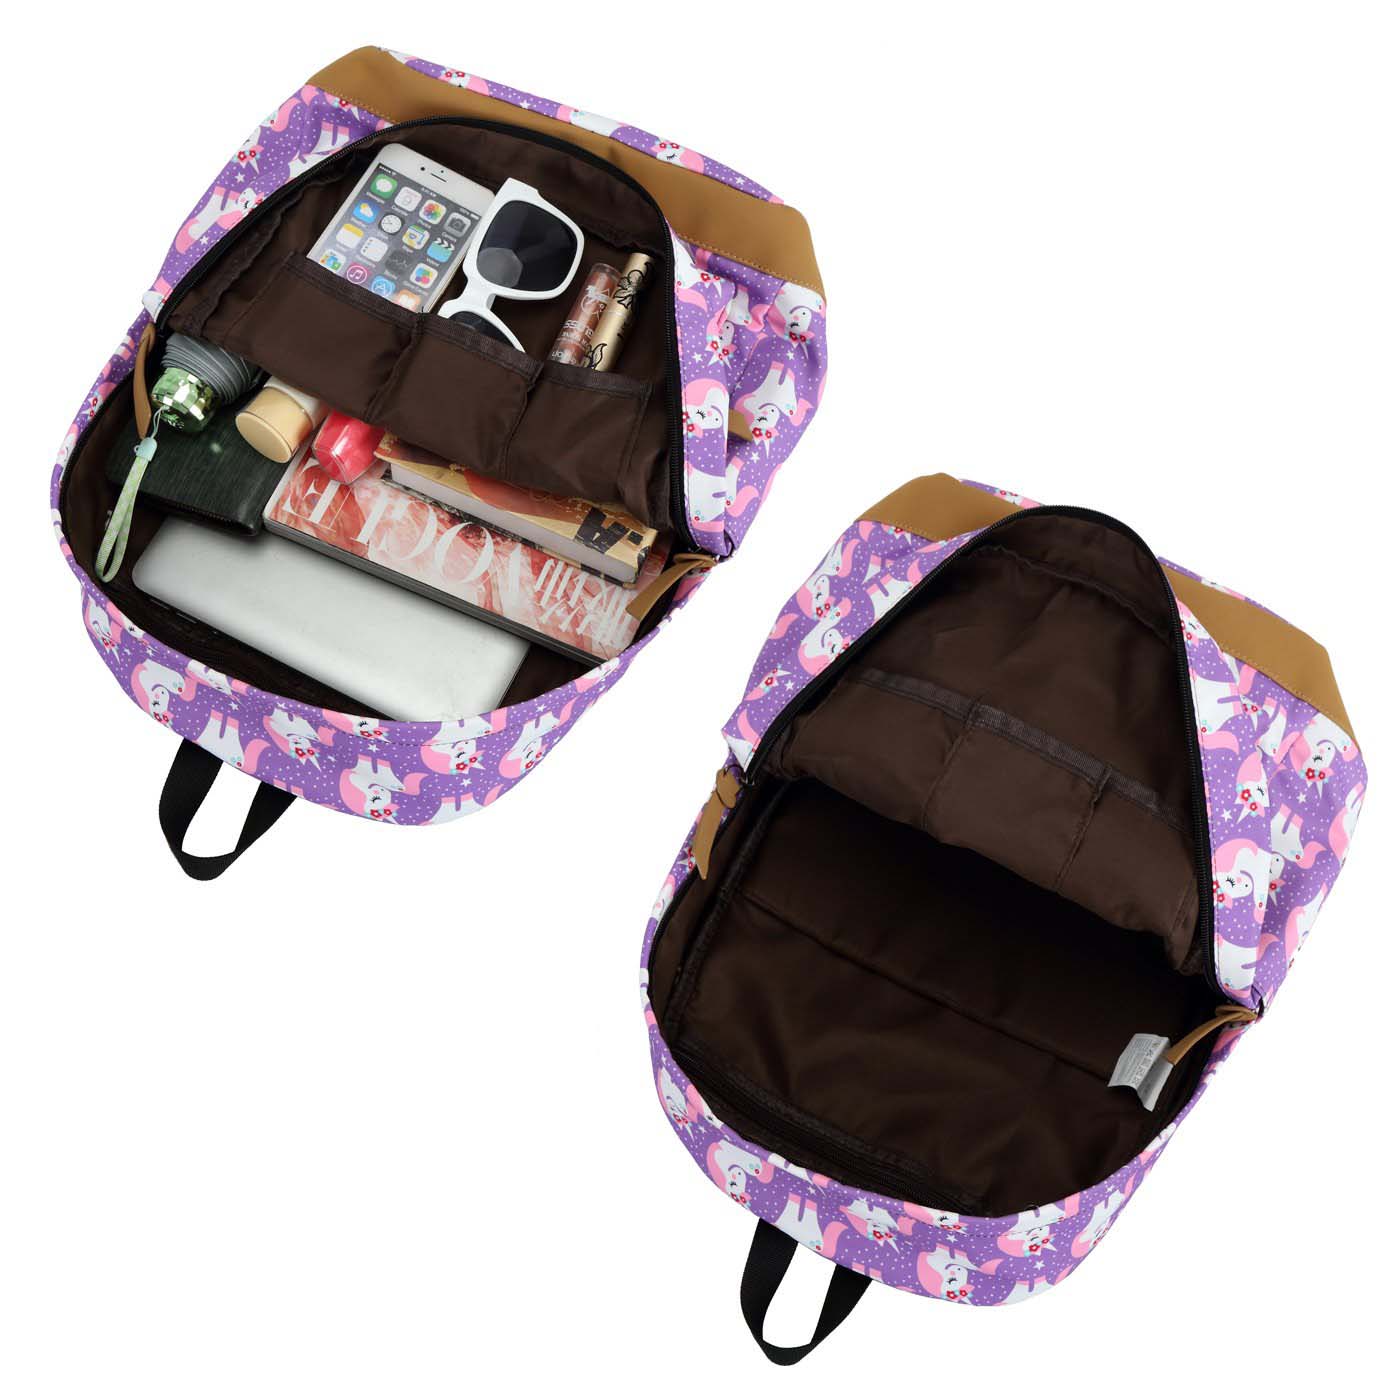 Professional Design Teenage School Bags - School Backpack for Girls Cute Teens School Bag Bookbags Set Travel Daypack – Twinkling Star